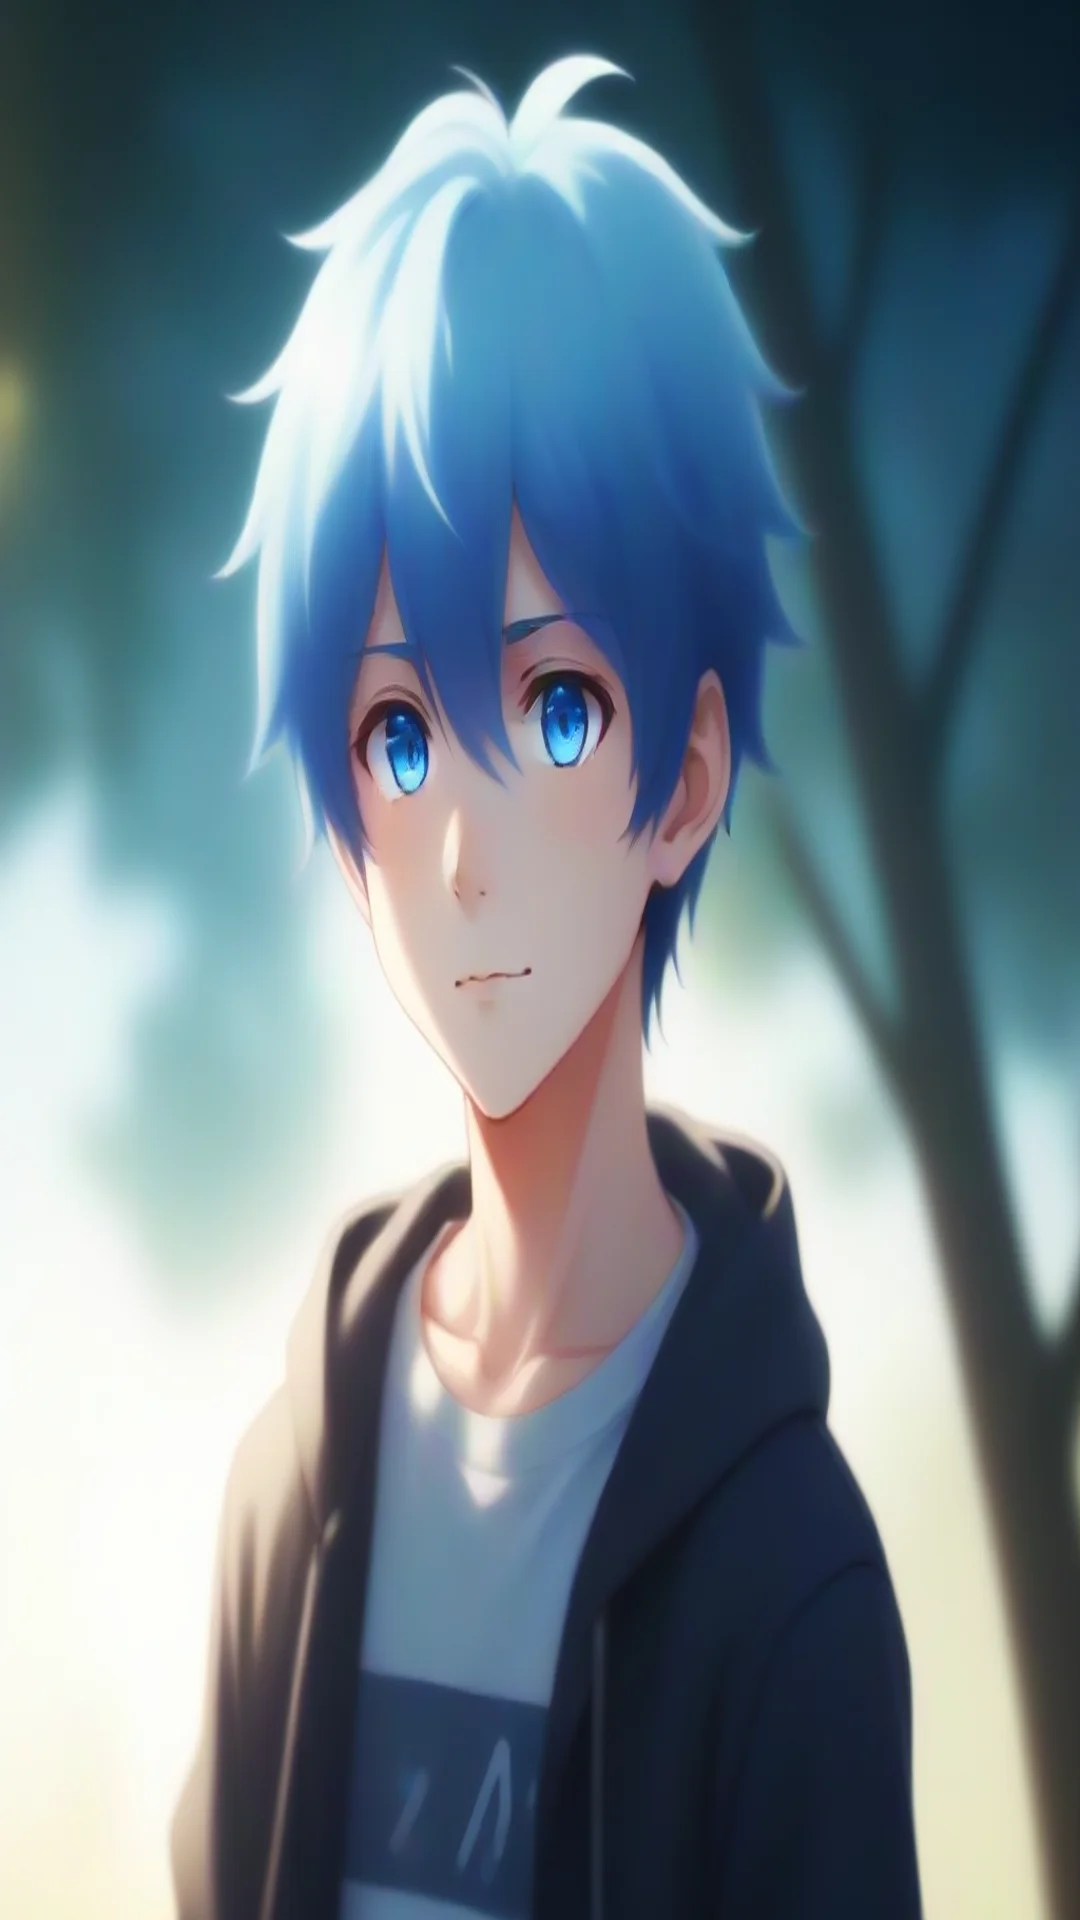 aimath sunlight simple anime boy blue hair bright blue eyes tall